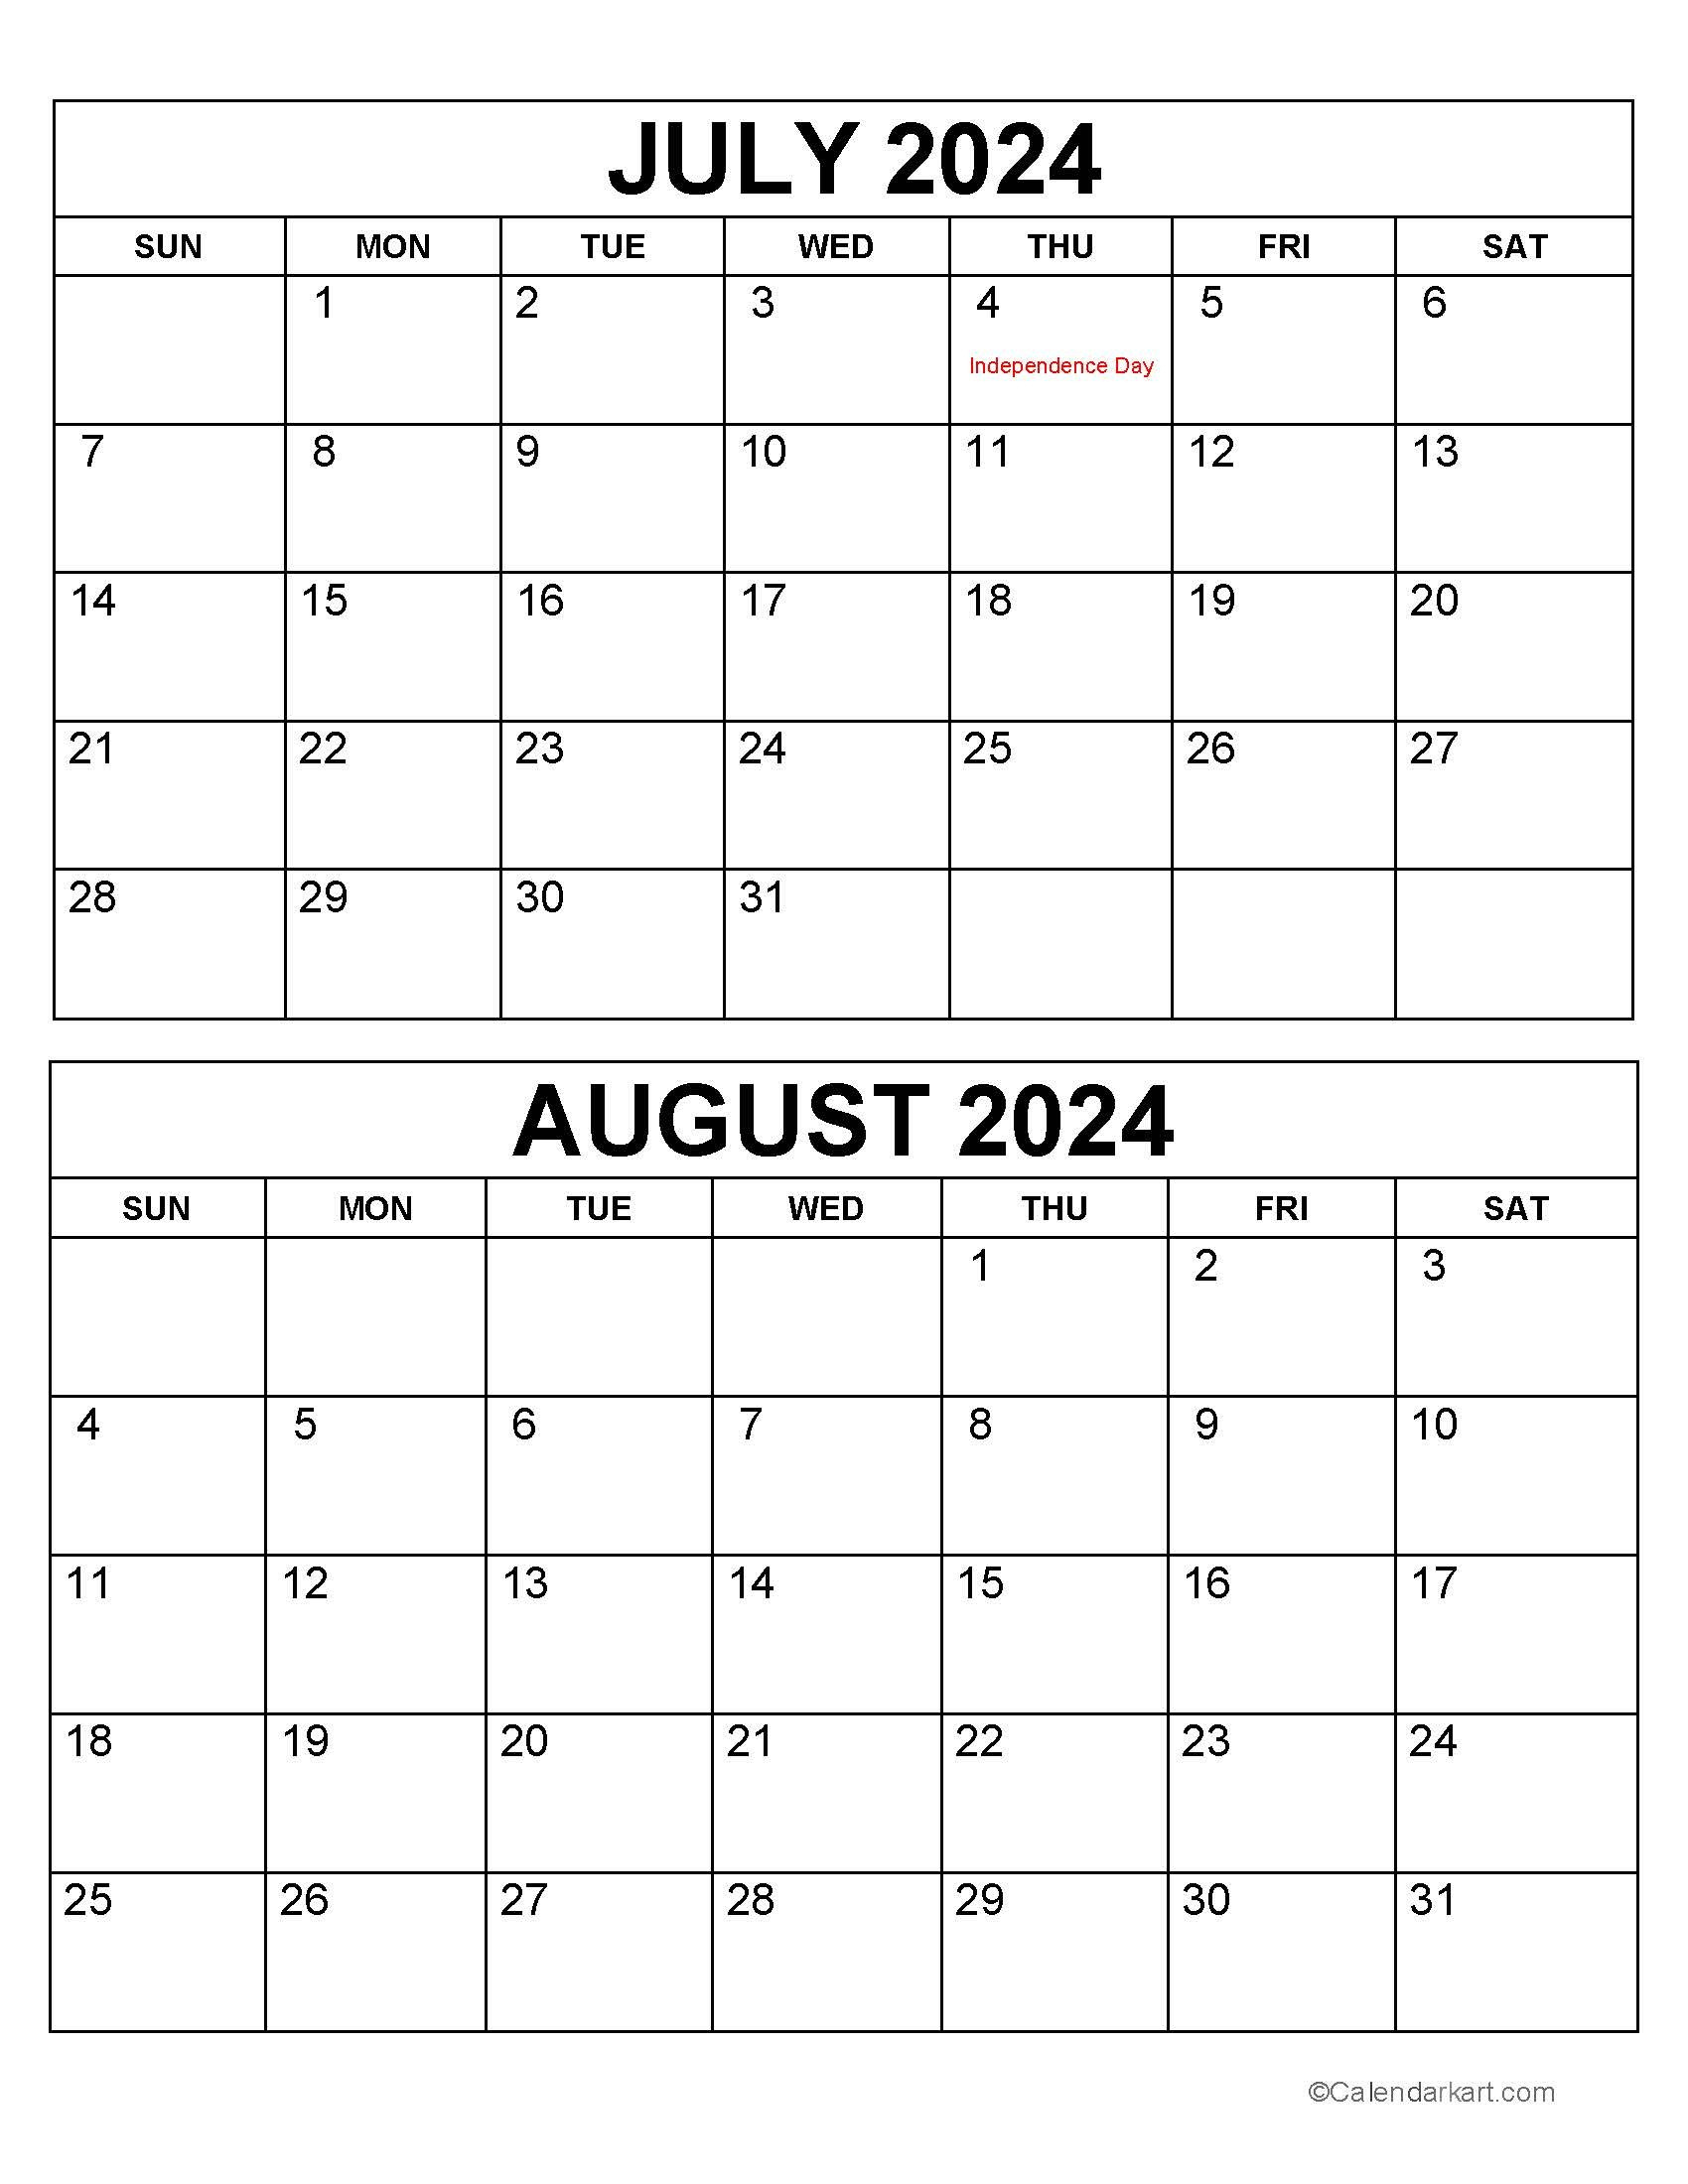 Printable July August 2024 Calendar | Calendarkart inside Calendar July 2024 and August 2024